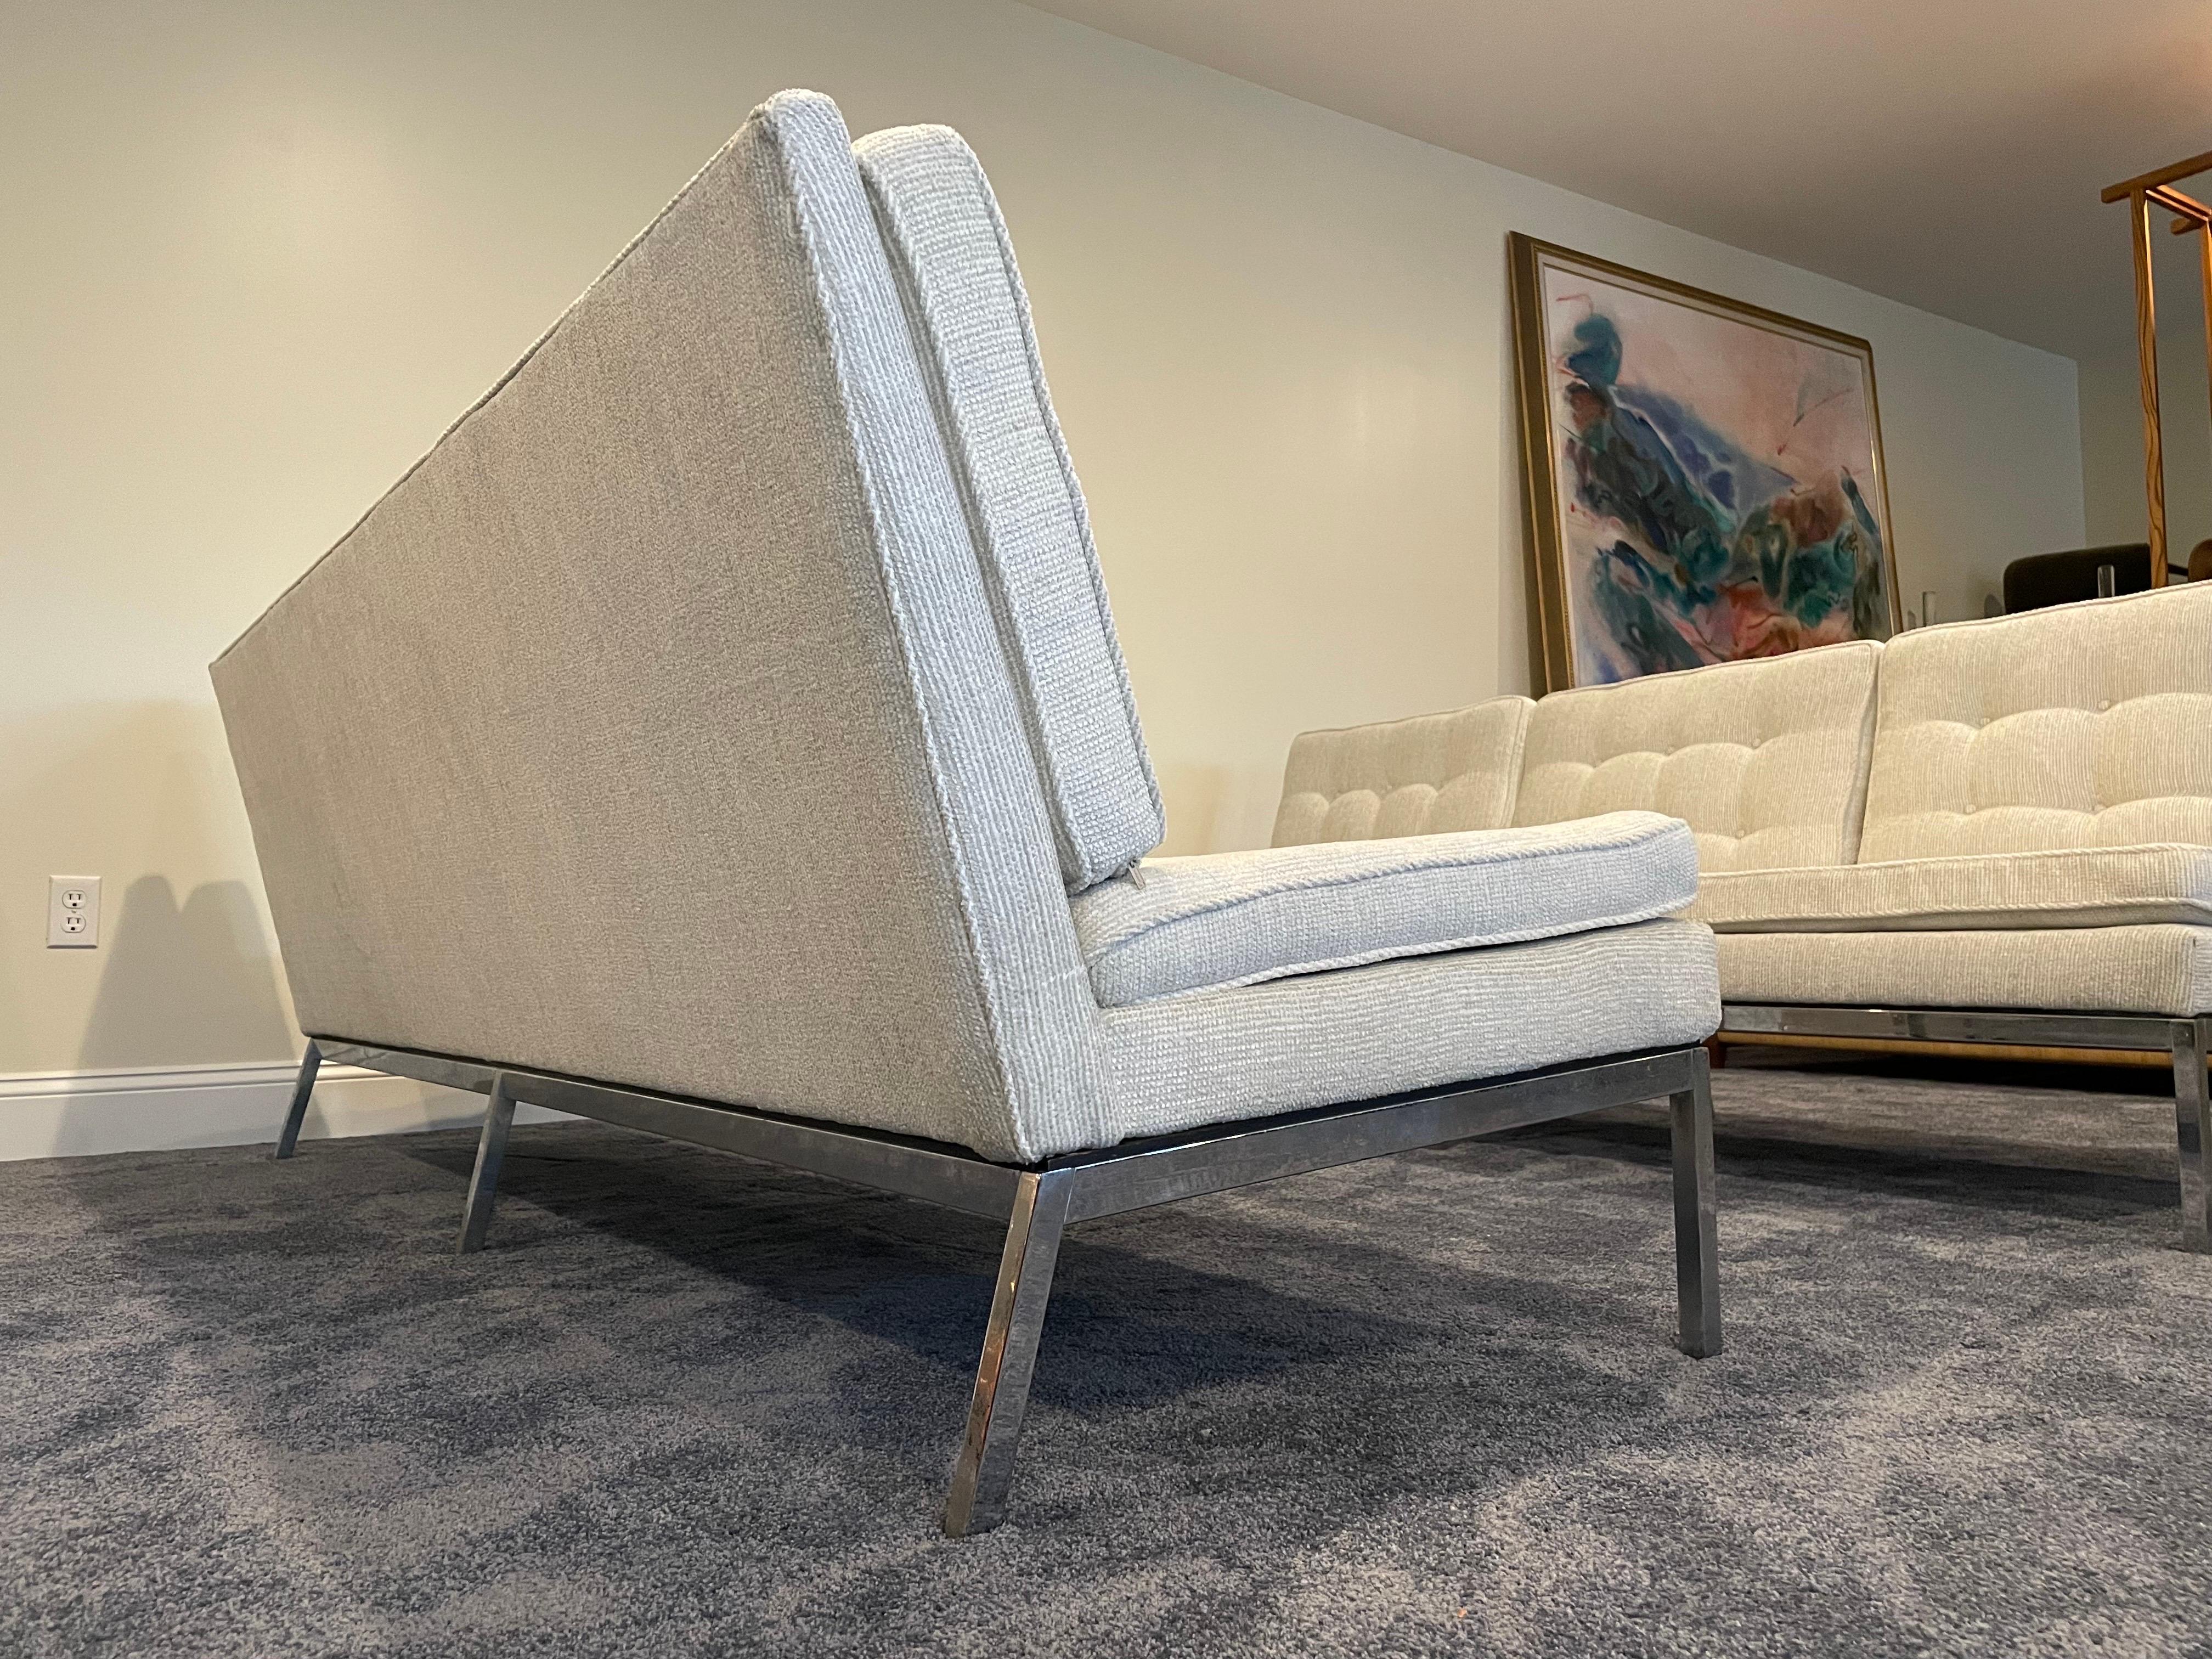 Les canapés sans accoudoirs Florence Knoll sont un exemple étonnant du design moderne du milieu du siècle dernier. Les canapés sont des pièces classiques qui ont résisté à l'épreuve du temps et qui témoignent de l'attrait durable du travail de